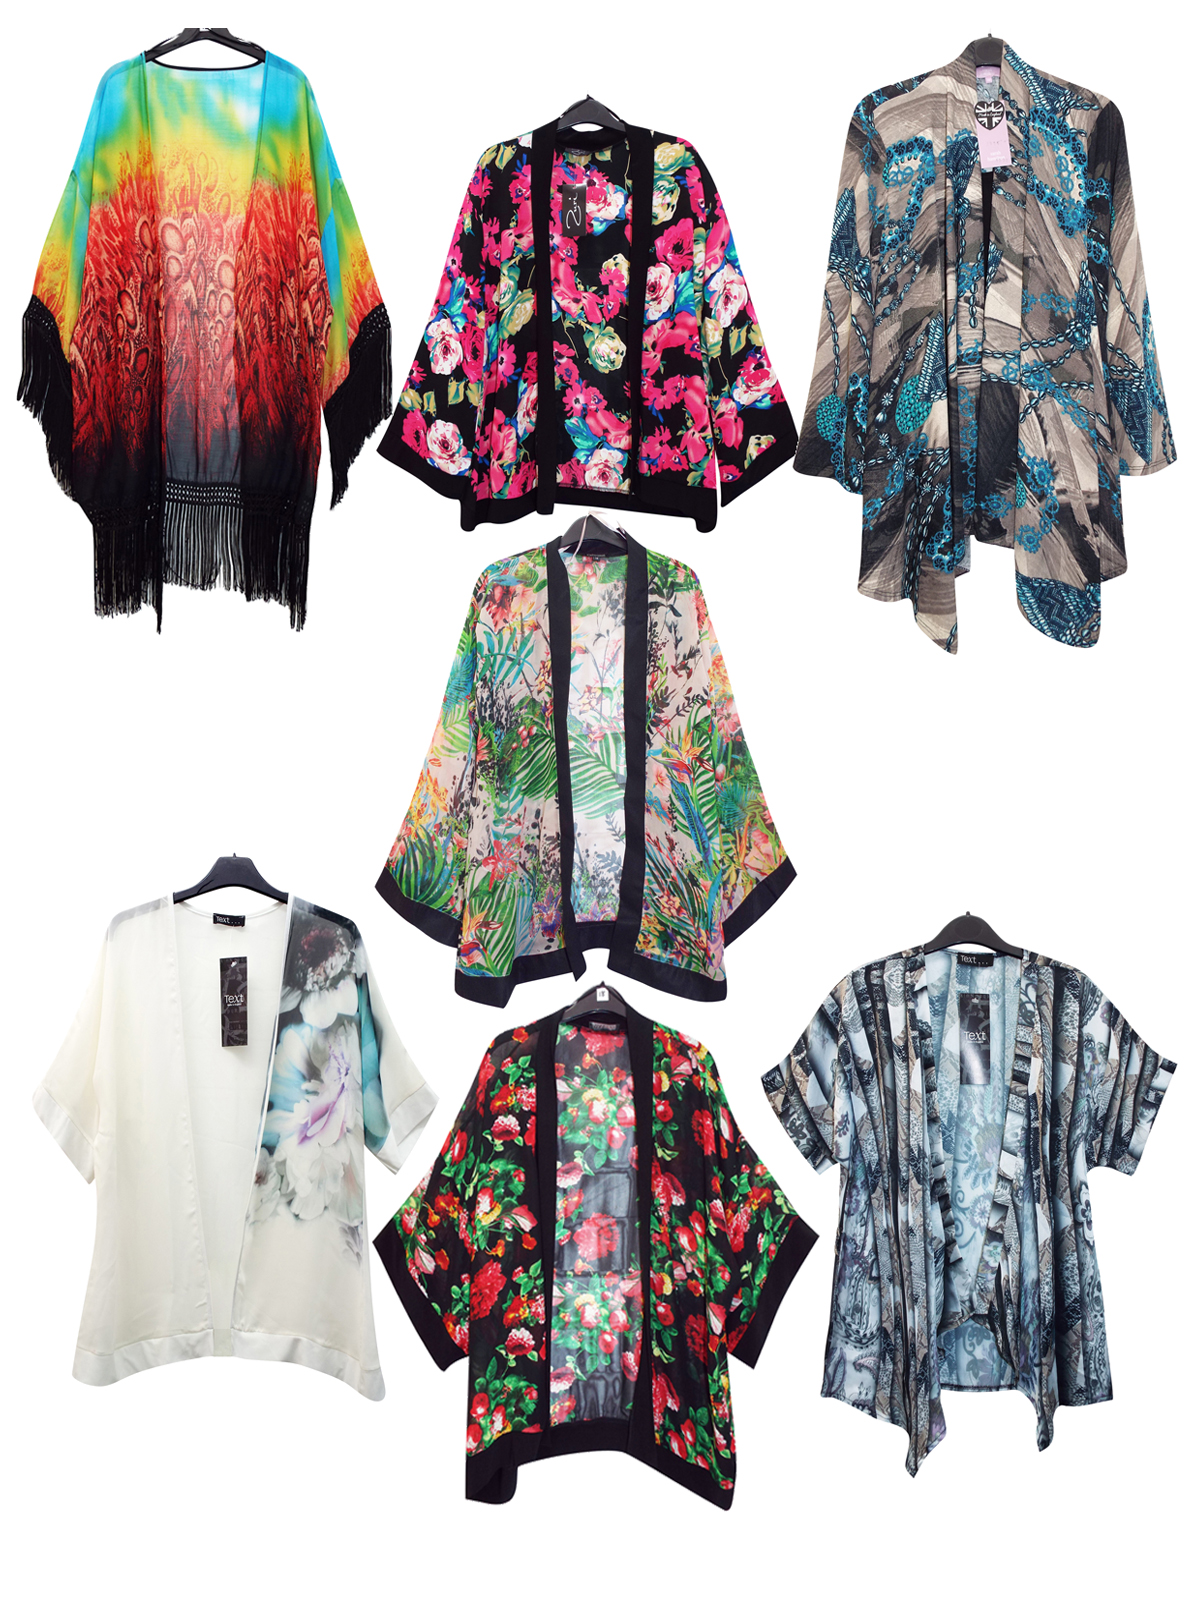 ASSORTED Kimonos - Size 12 to 18